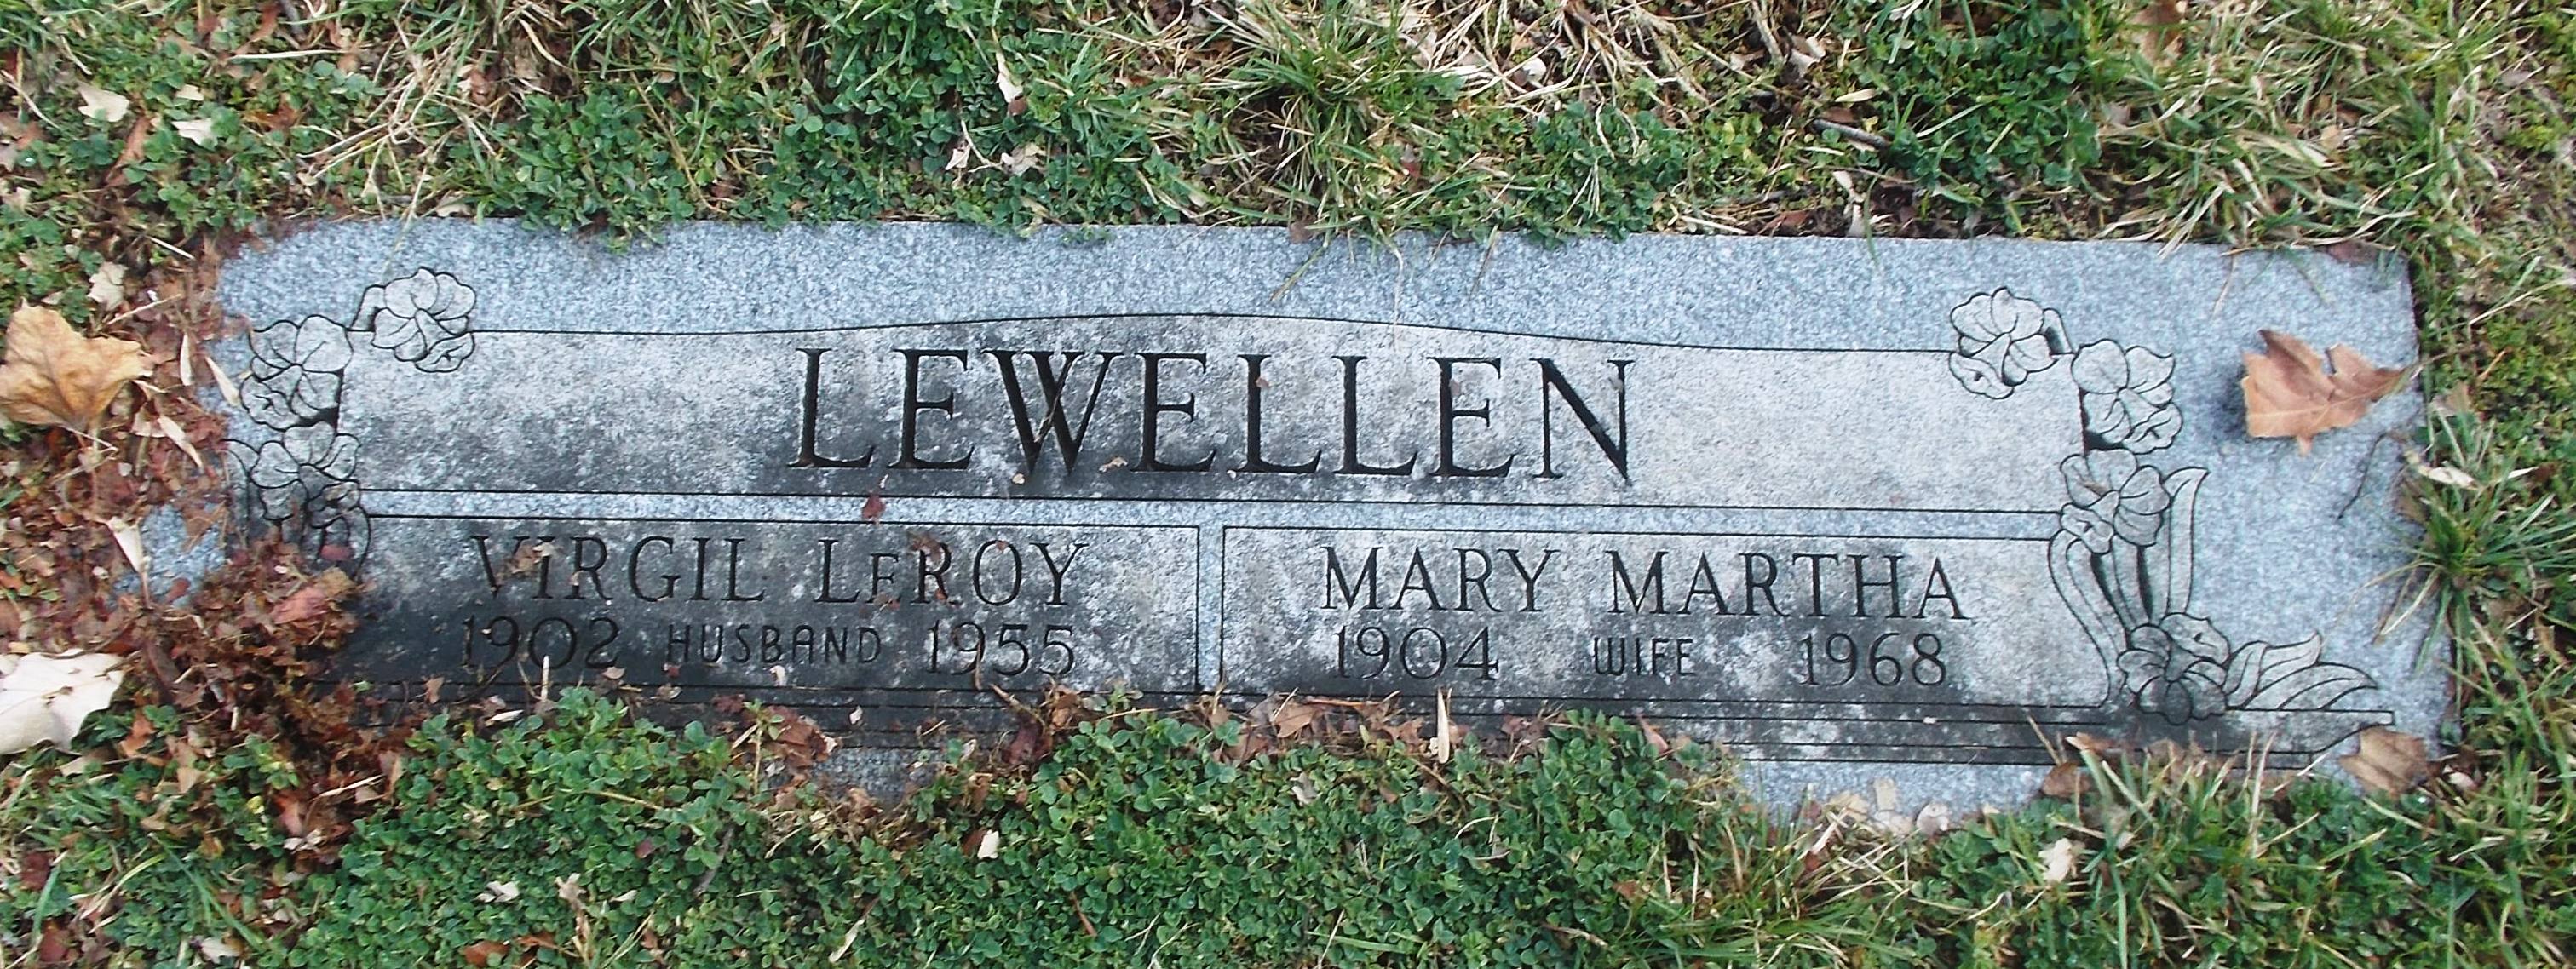 Mary Martha Lewellen